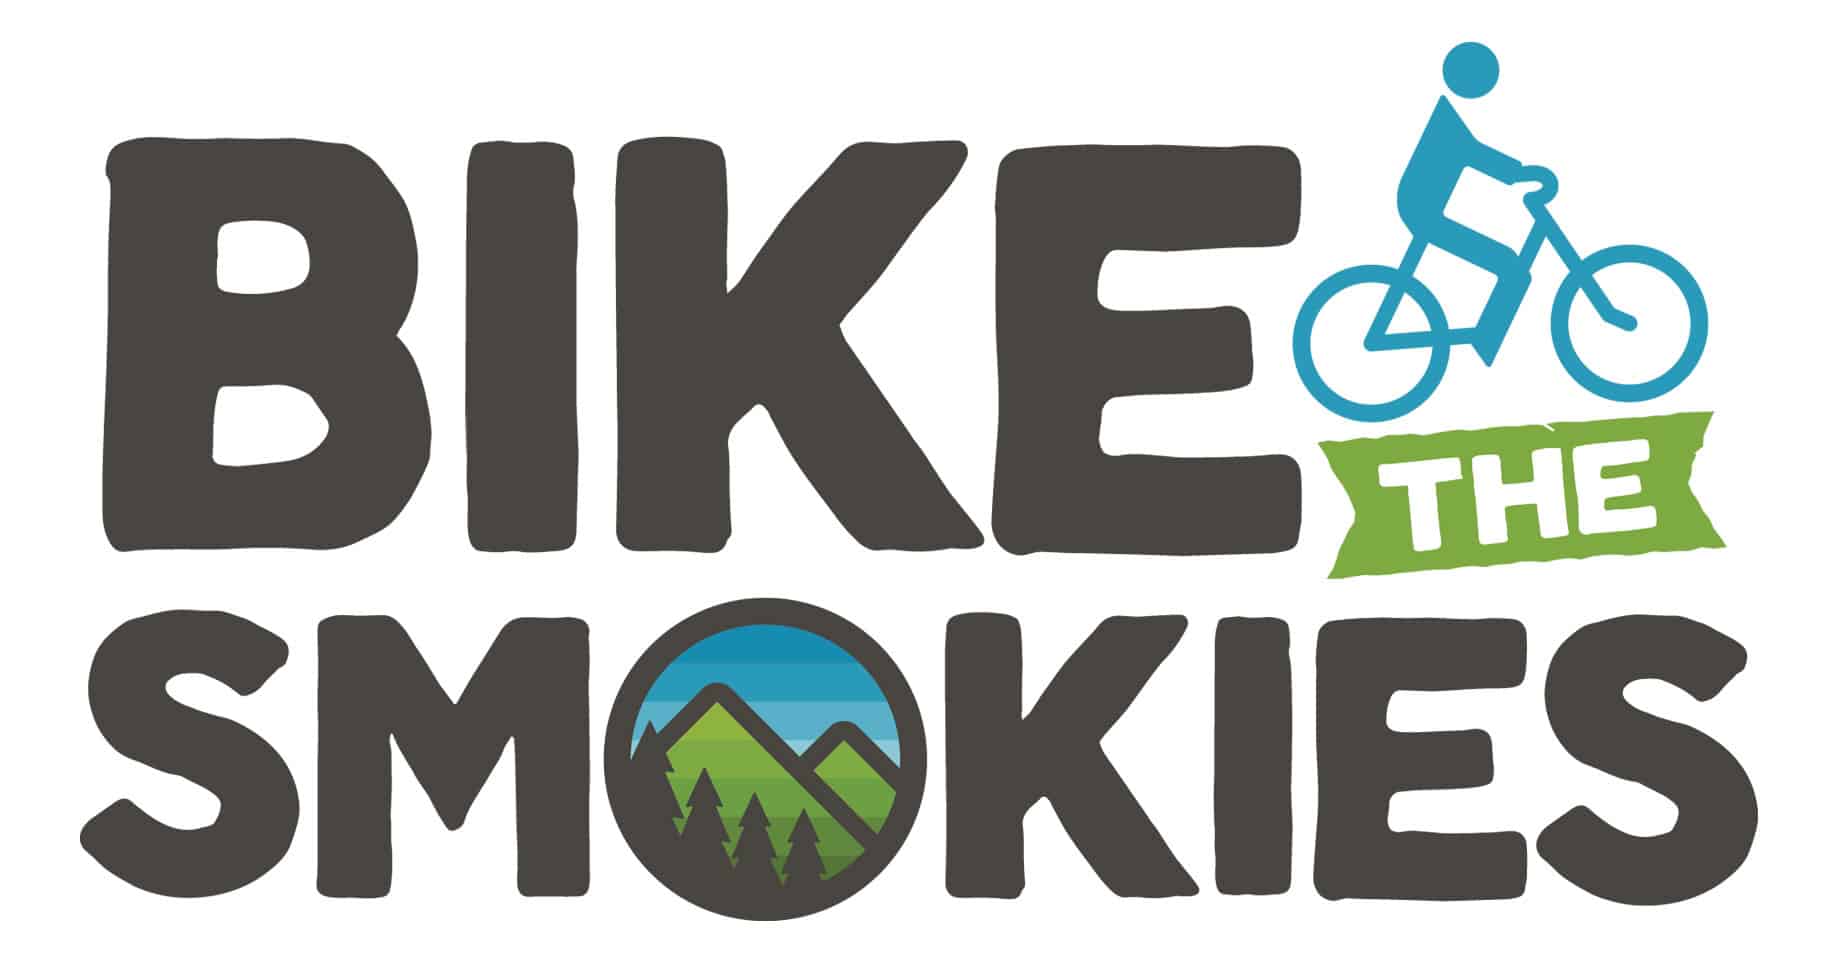 Bike The Smokies